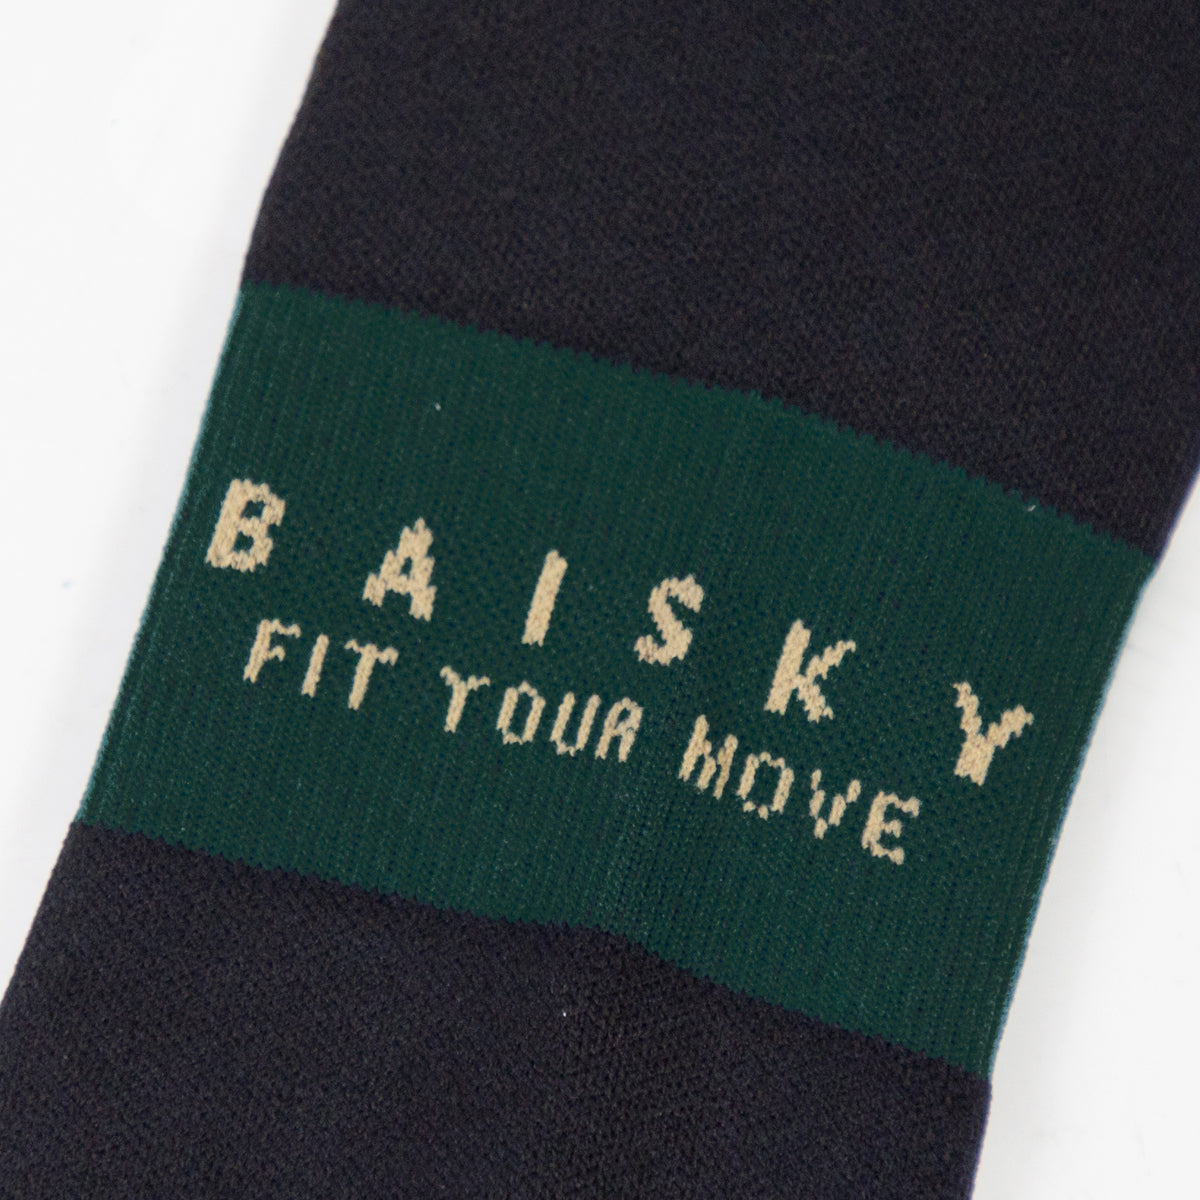 Baisky Mens Sport Socks (Armed)